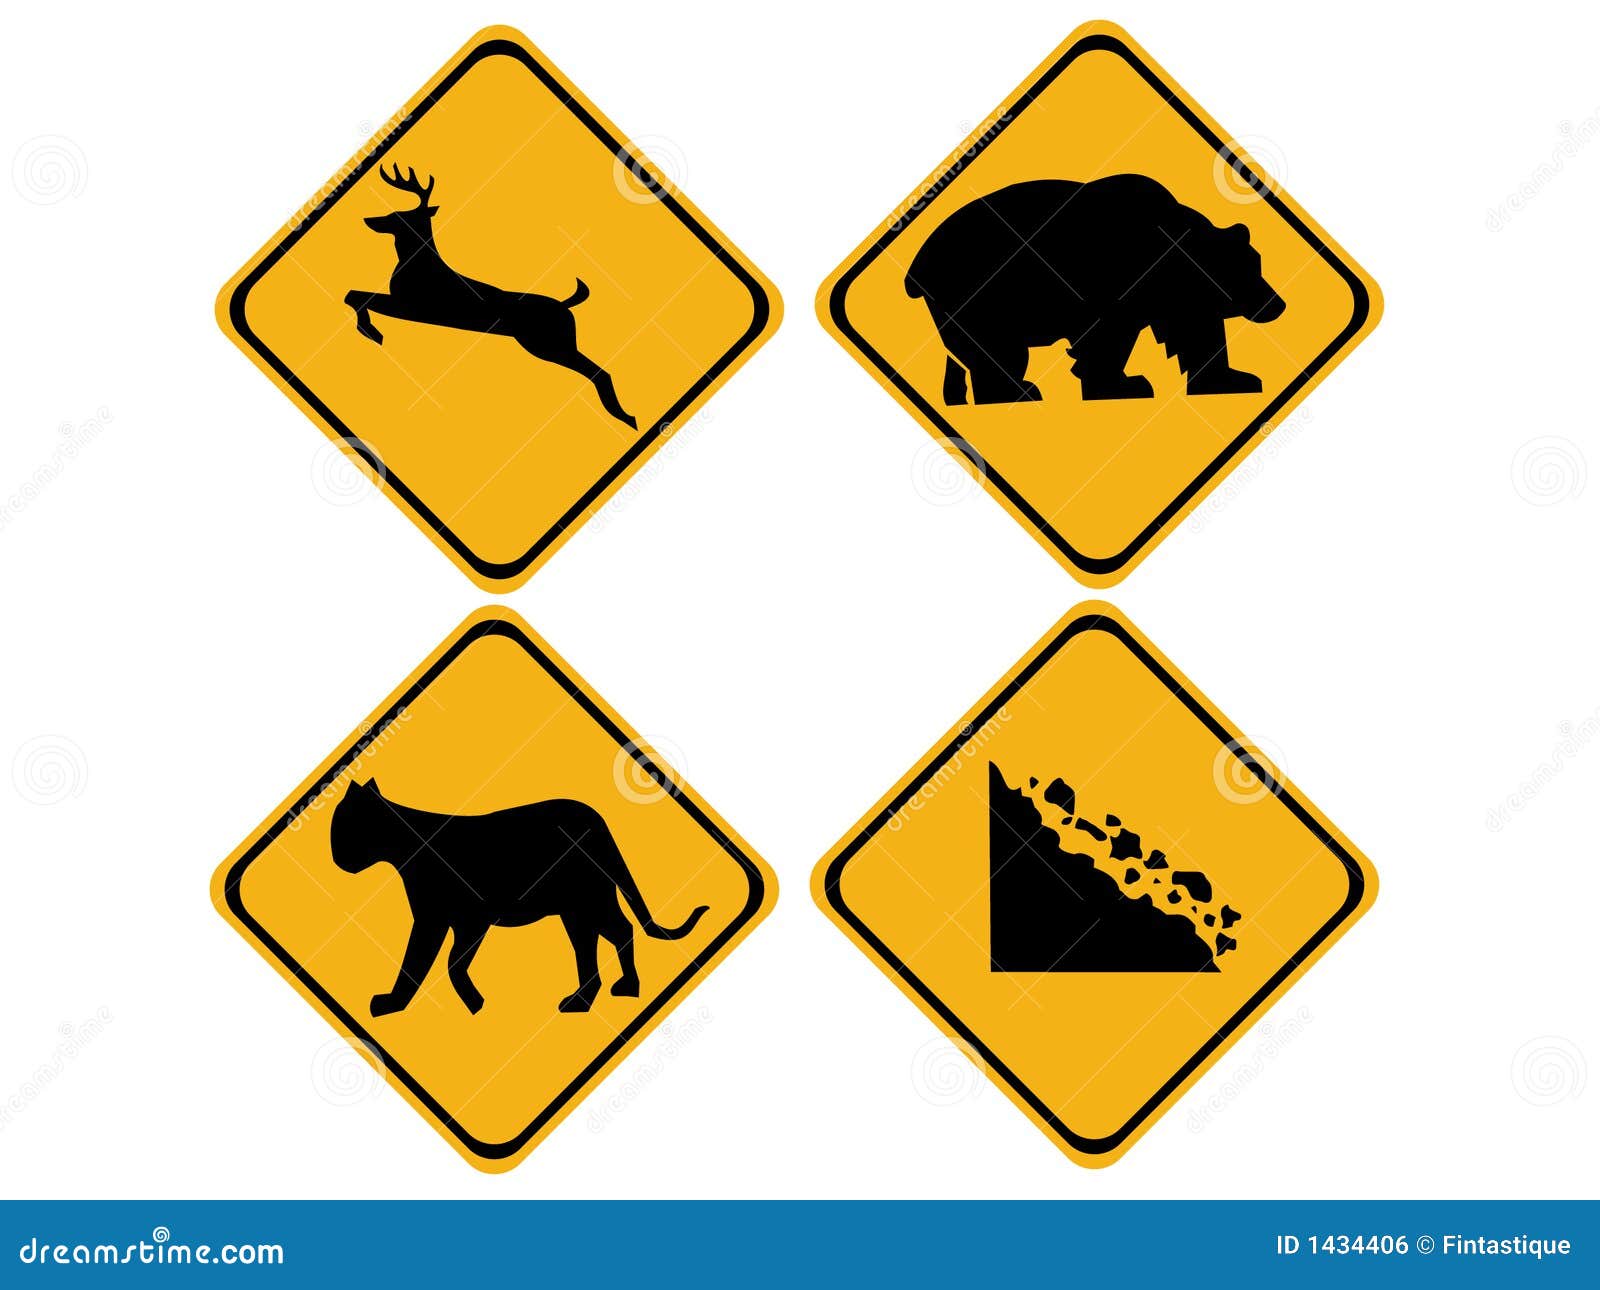 Символ дикой природы. Знак Дикие животные. Дорожный знак Дикие животные. Знак олень. Знак Дикие животные на прозрачном фоне.